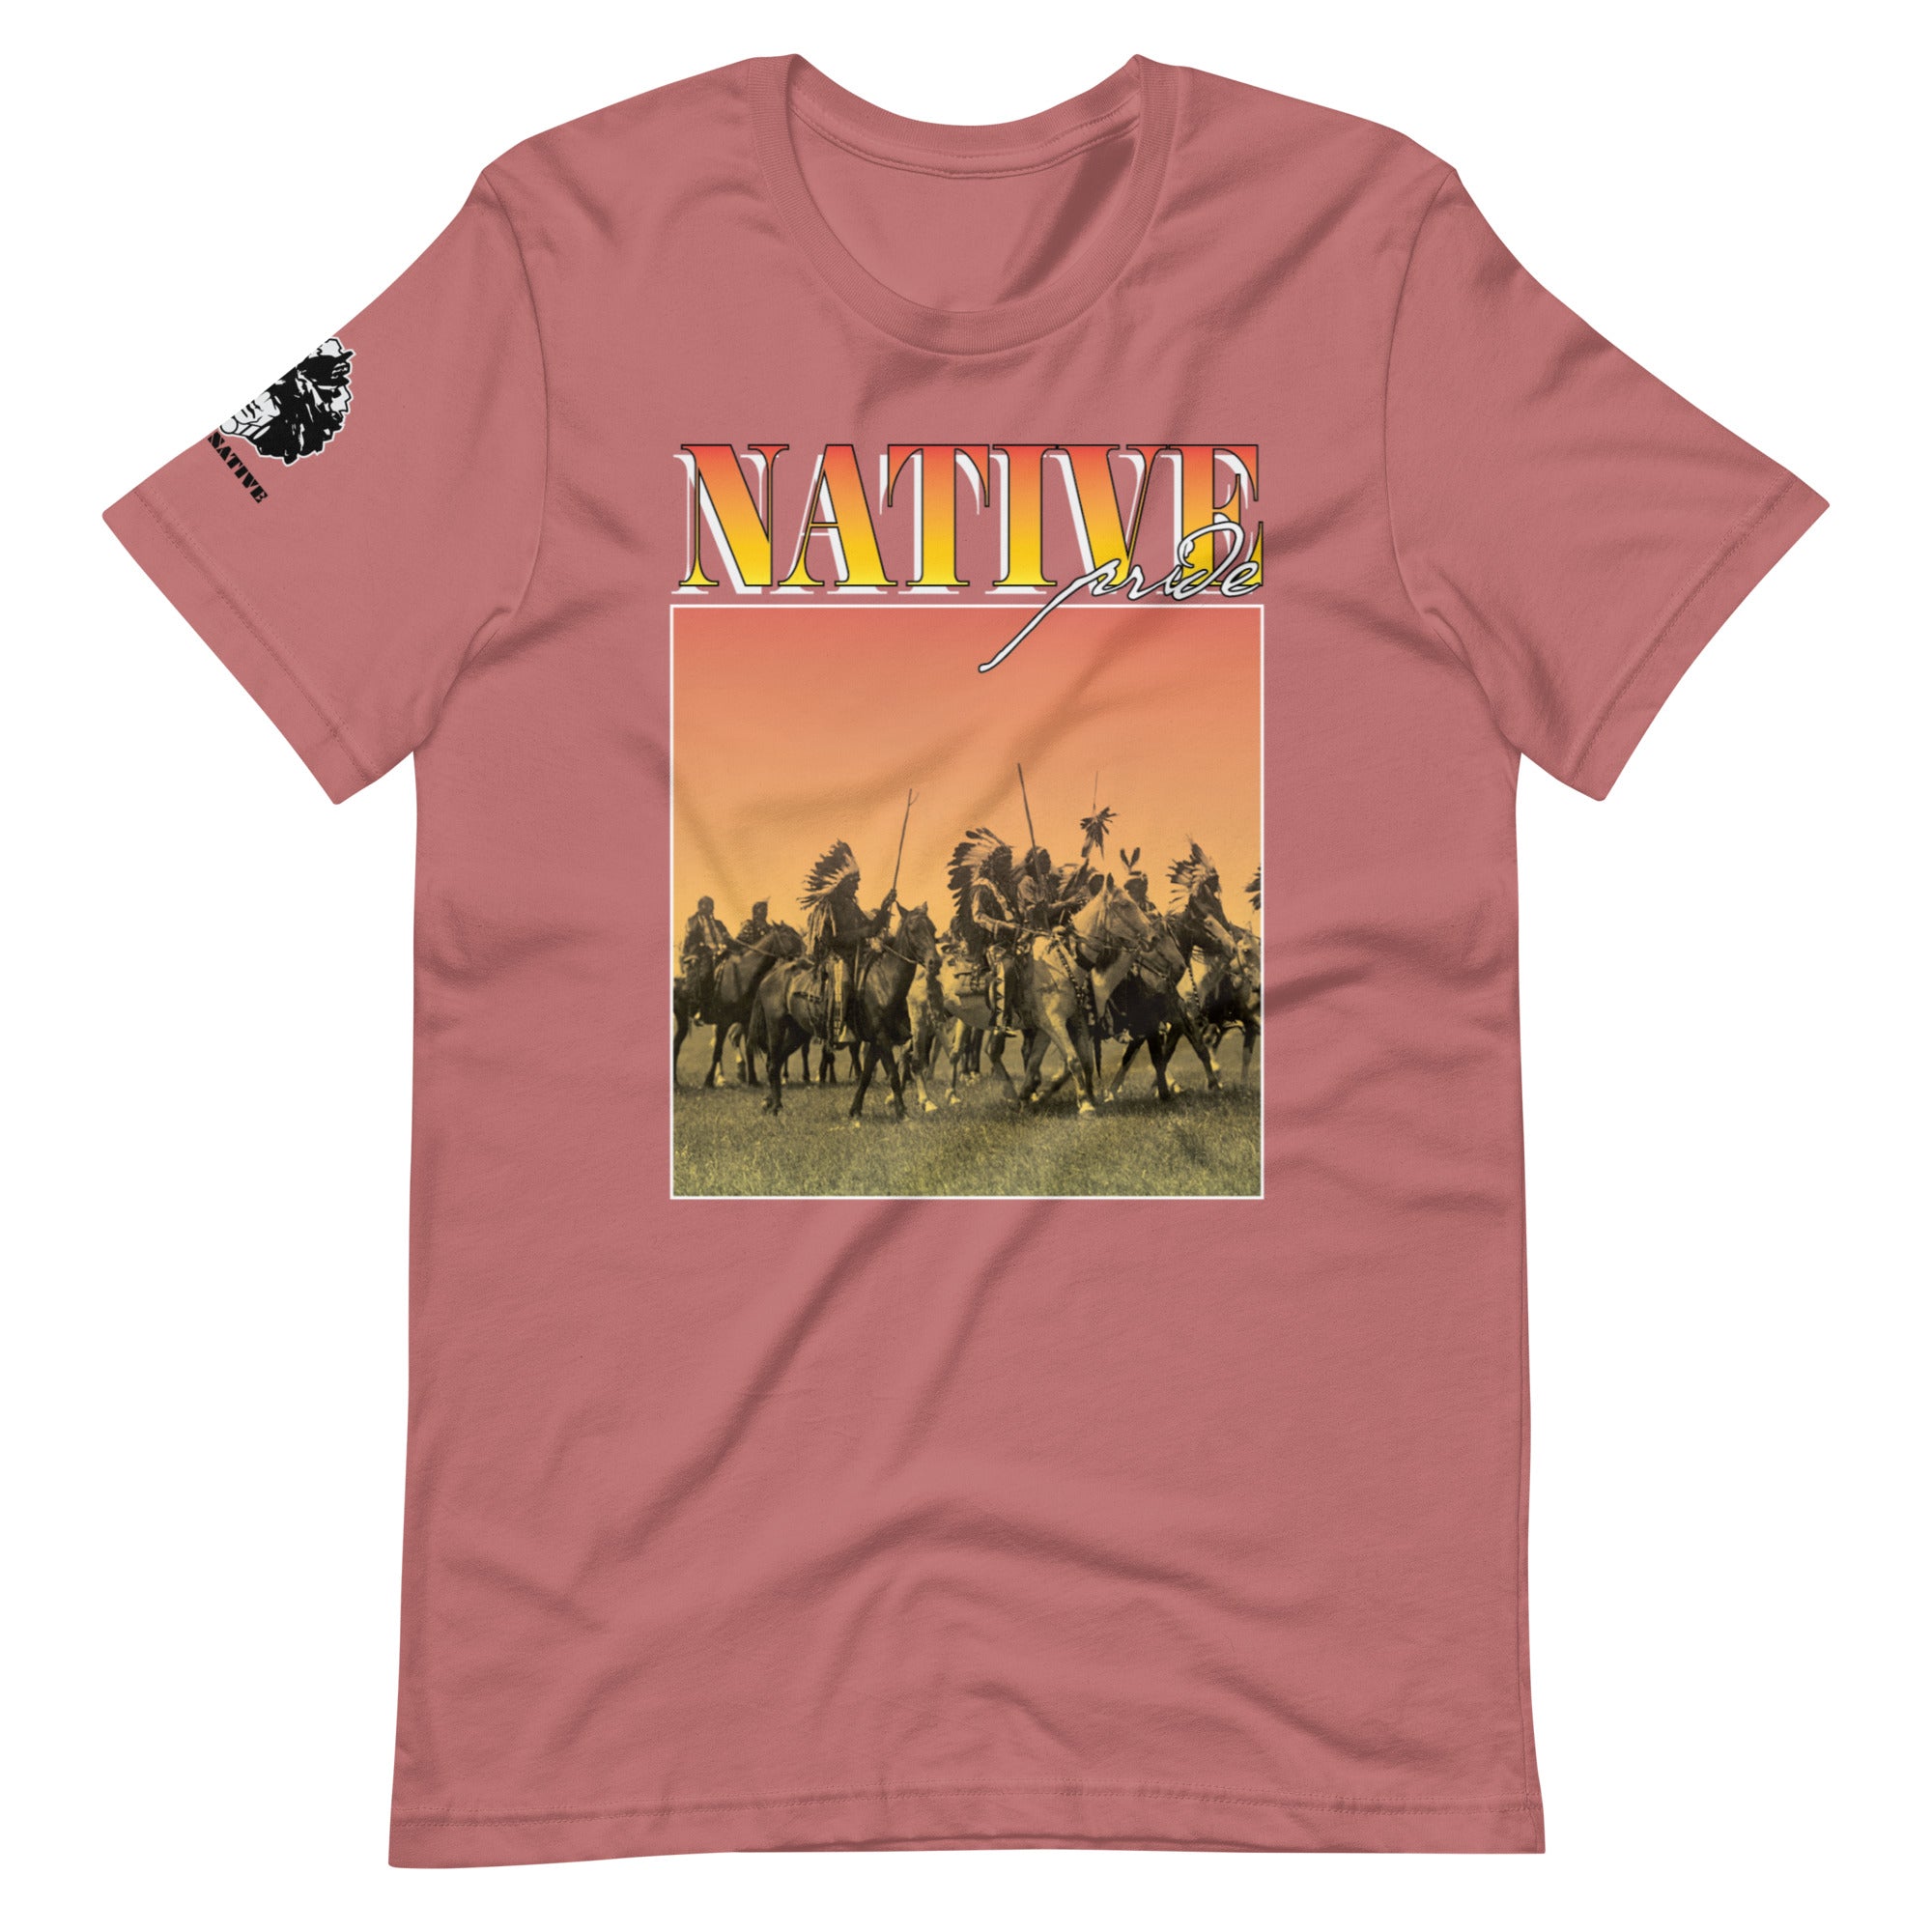 Sunset Riders t-shirt